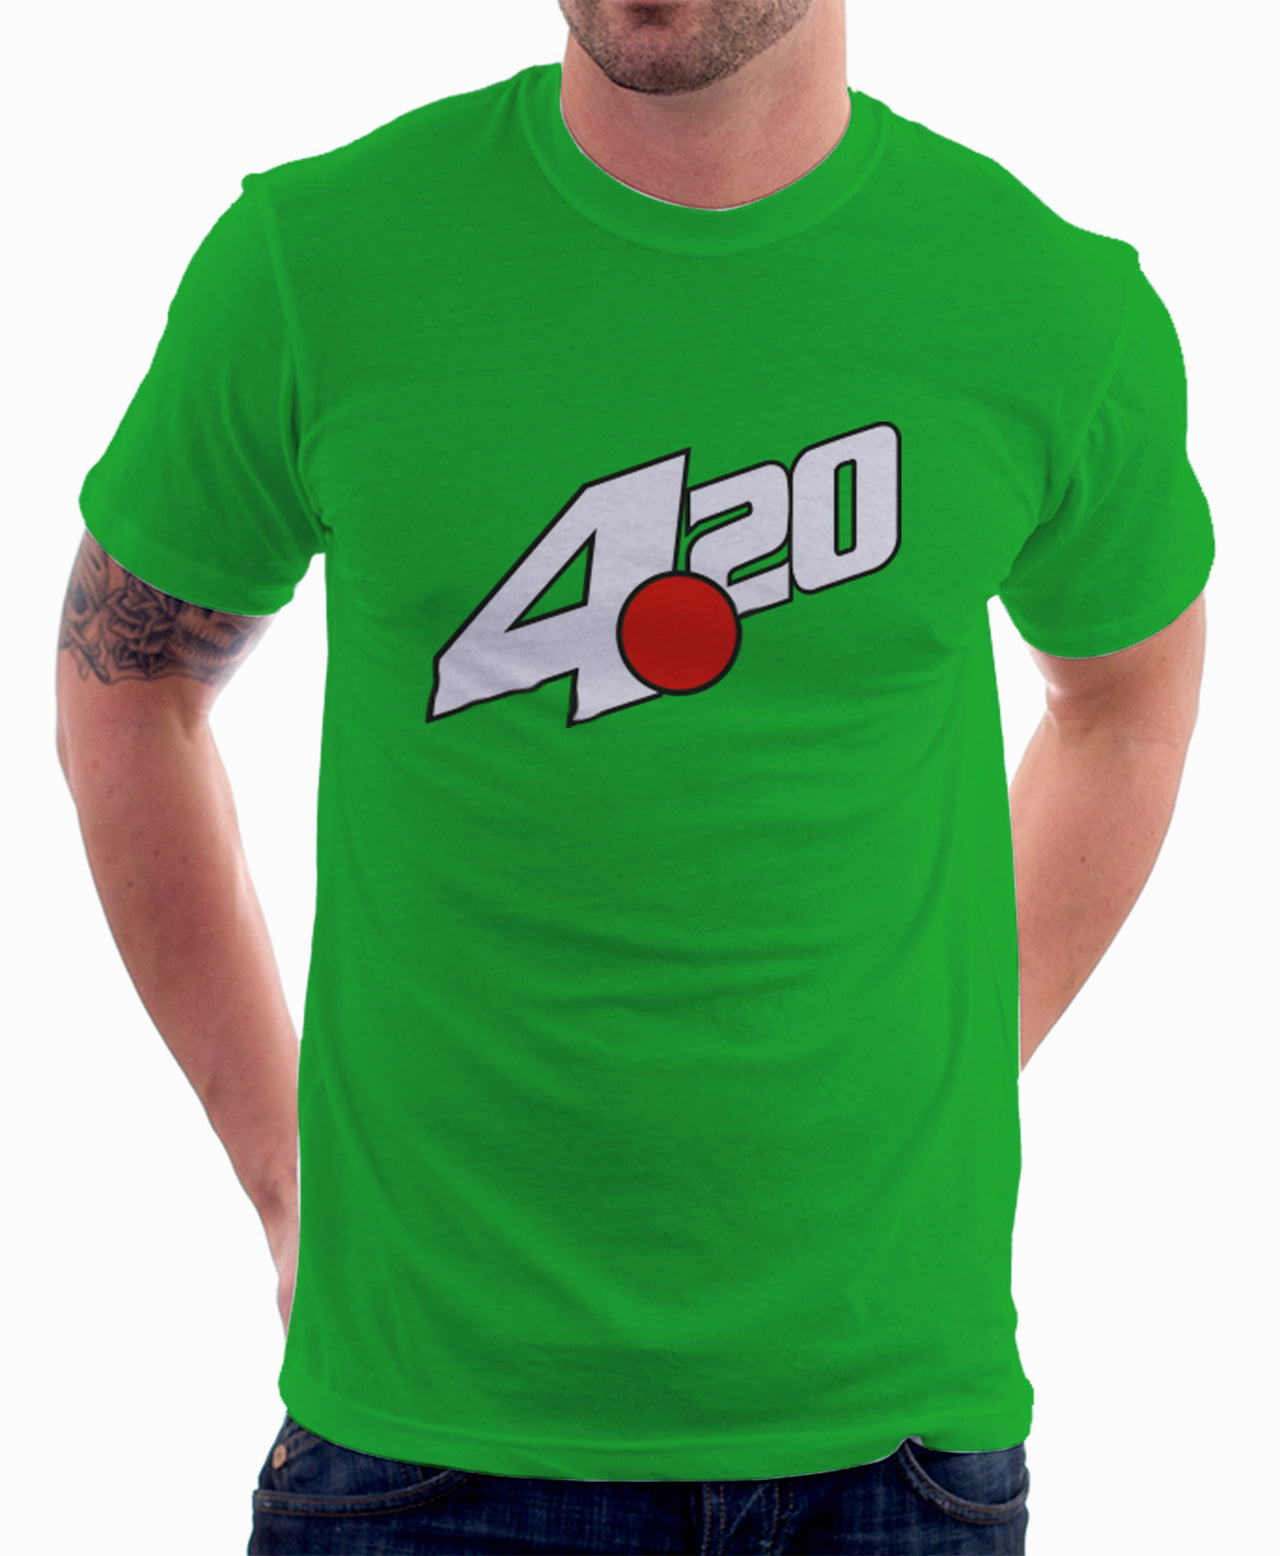 LIMITED EDITION: 420 Green t-shirt - TshirtNow.net - 1